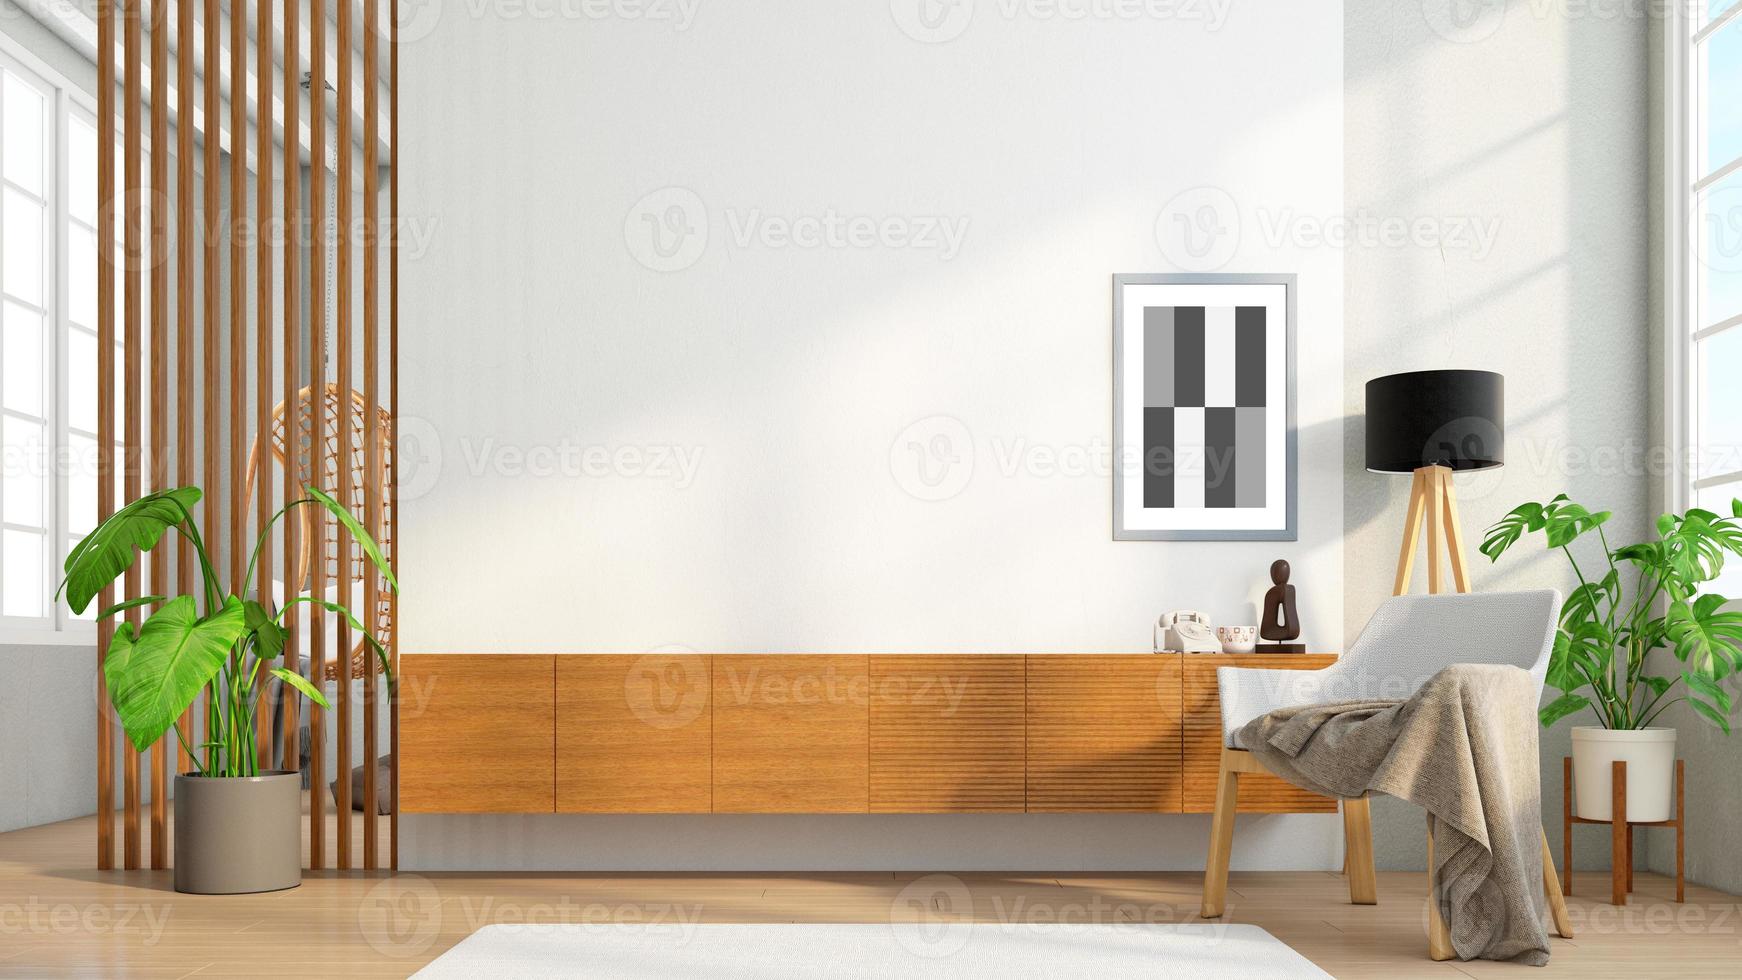 mueble de madera para tv en la pared de listones de madera en salón con diseño minimalista. representación 3d foto